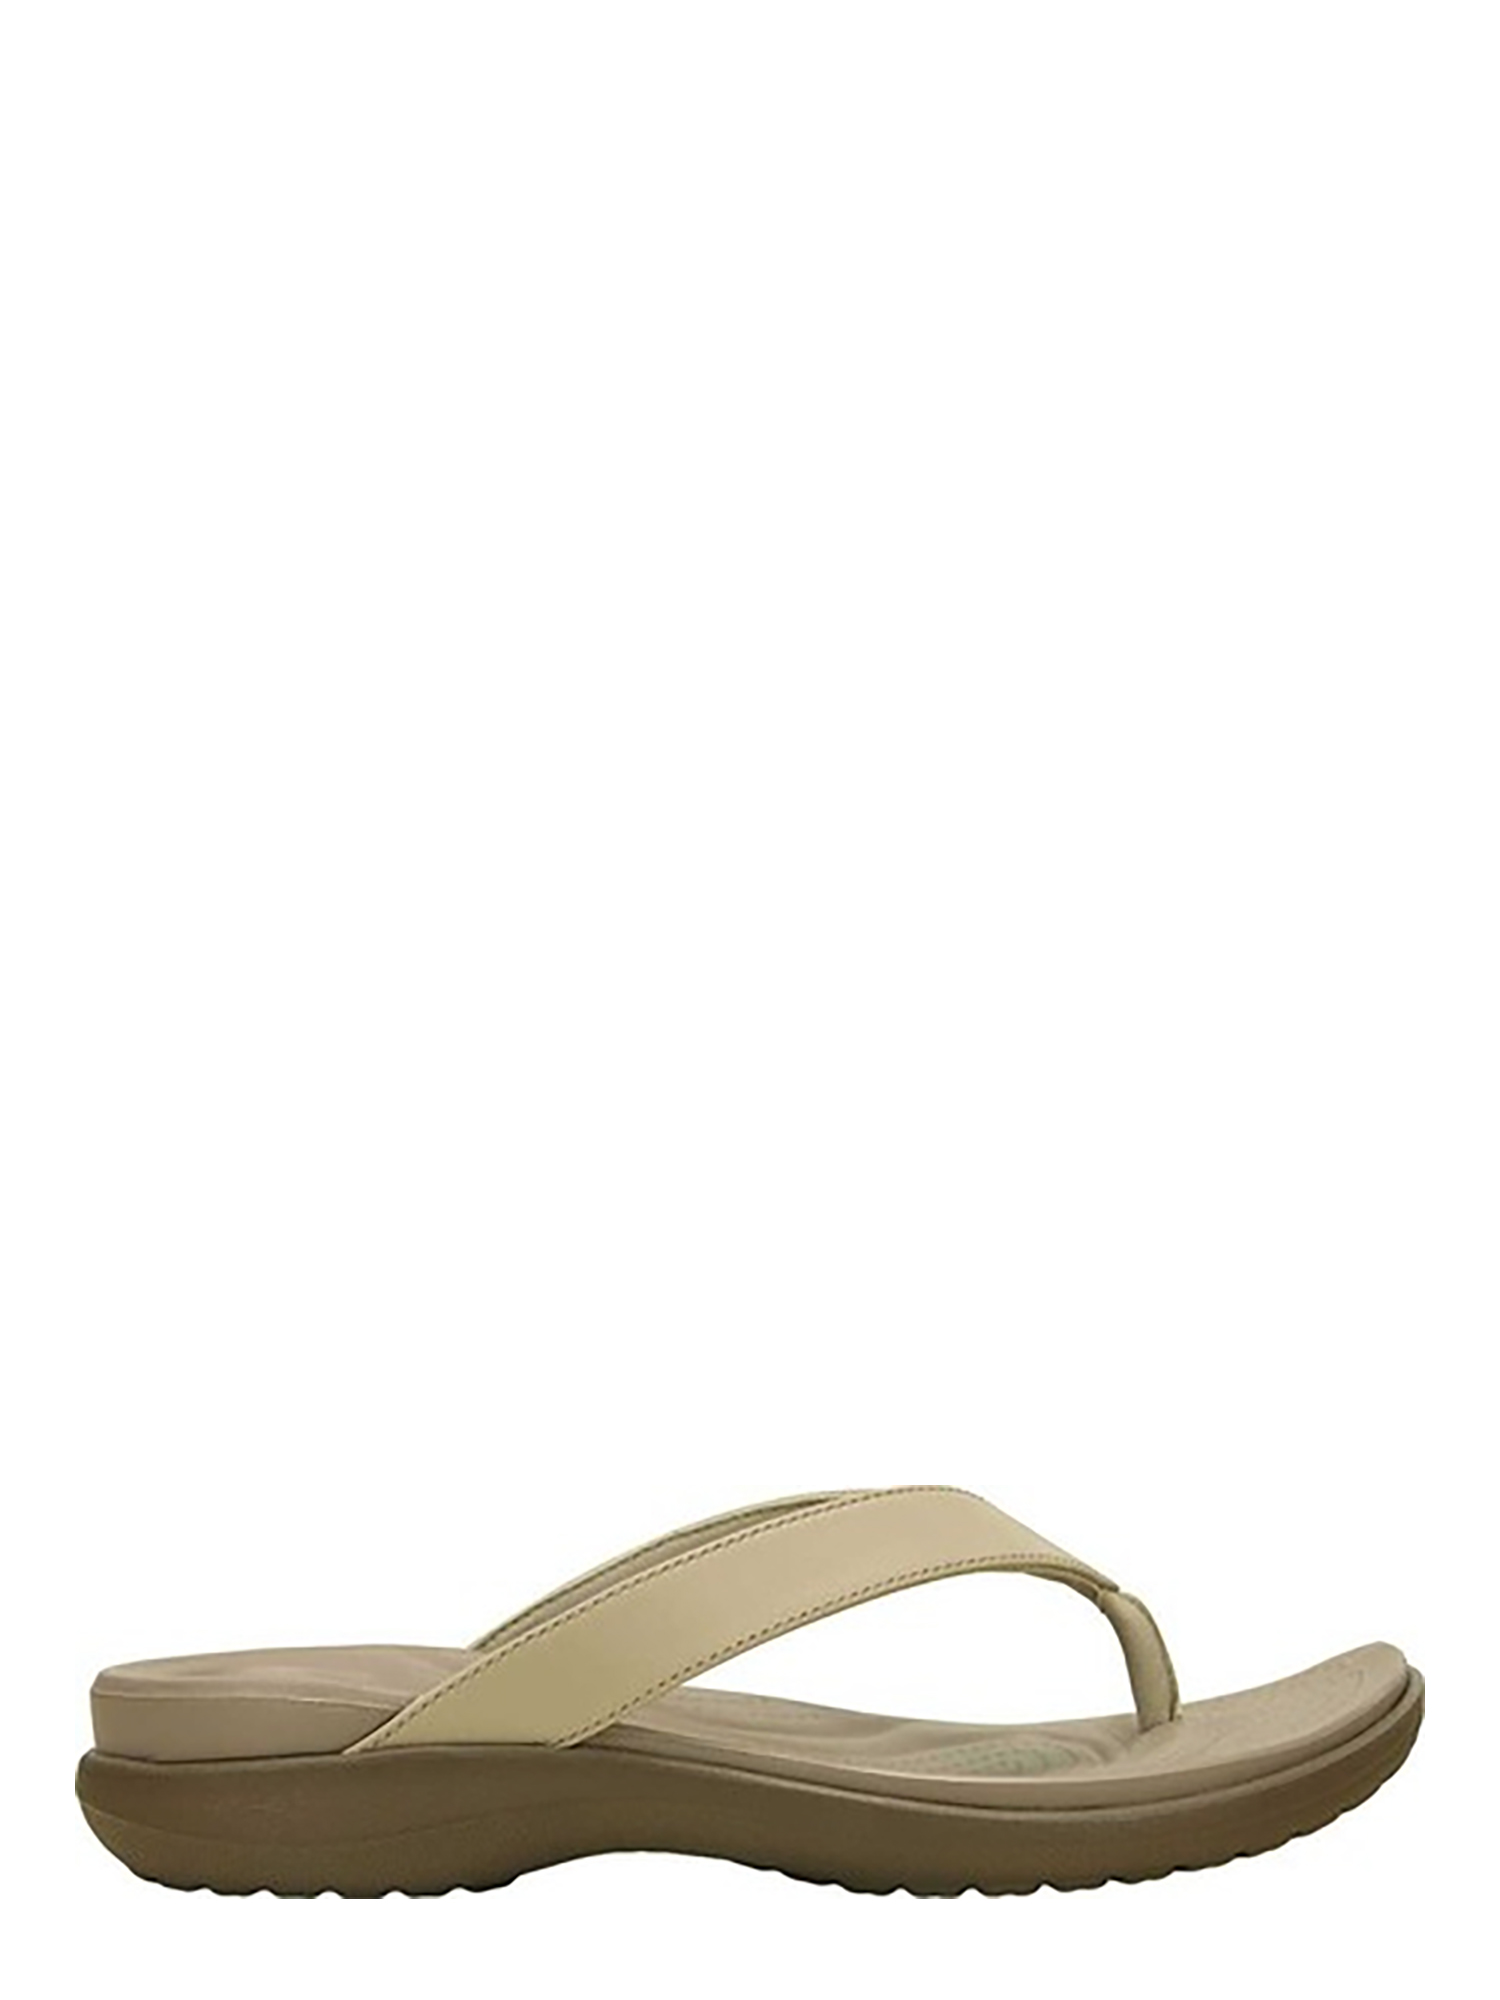 Crocs Women's Capri V Flip Sandals - Walmart.com